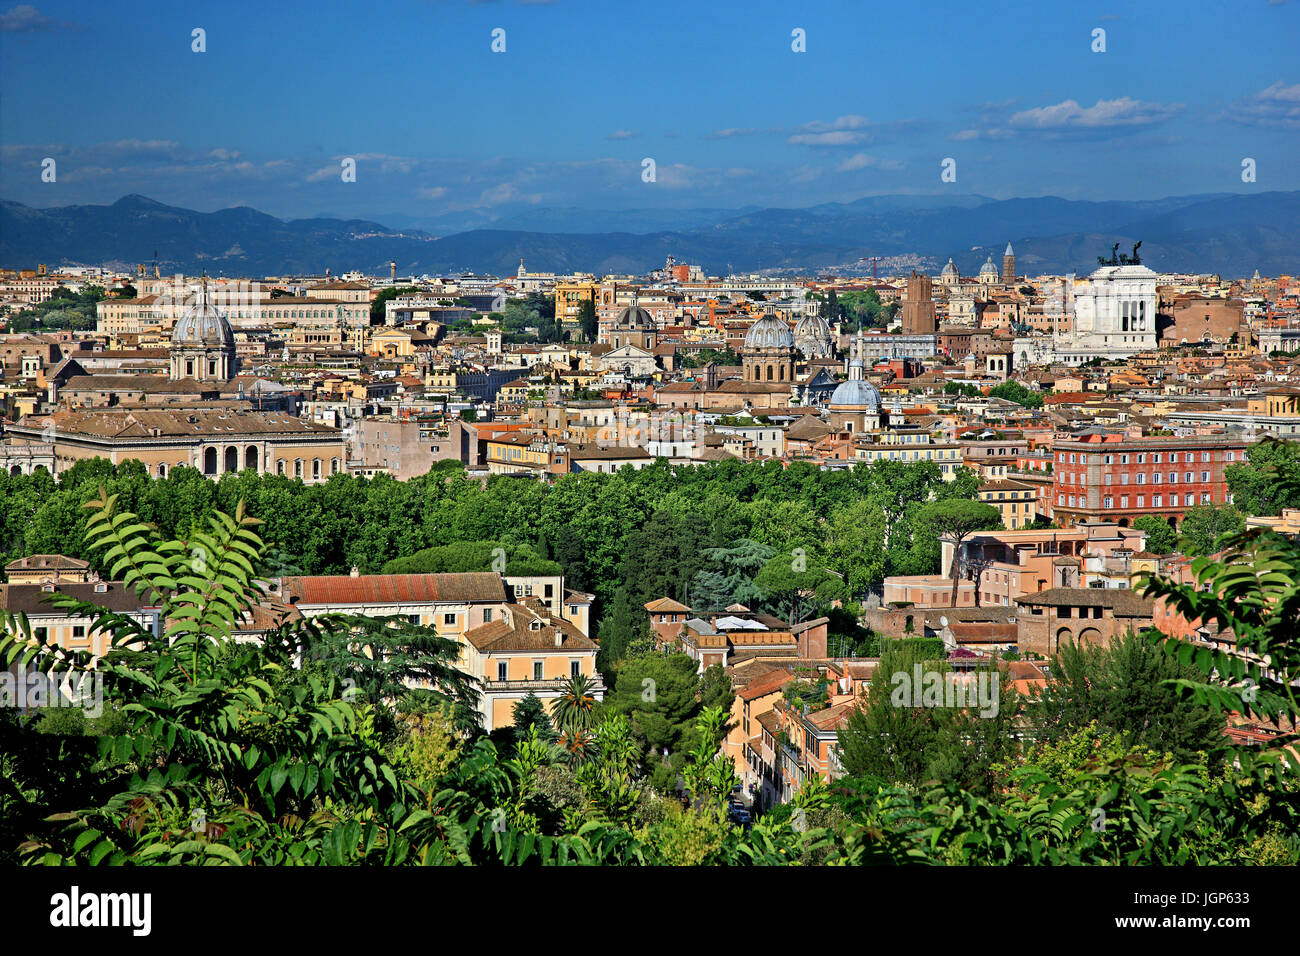 Vue de Rome à partir de la colline du Janicule. Le bâtiment blanc qui ressort est la "Vittoriano", également connu sous le nom de 'Altare della Patria'. Banque D'Images